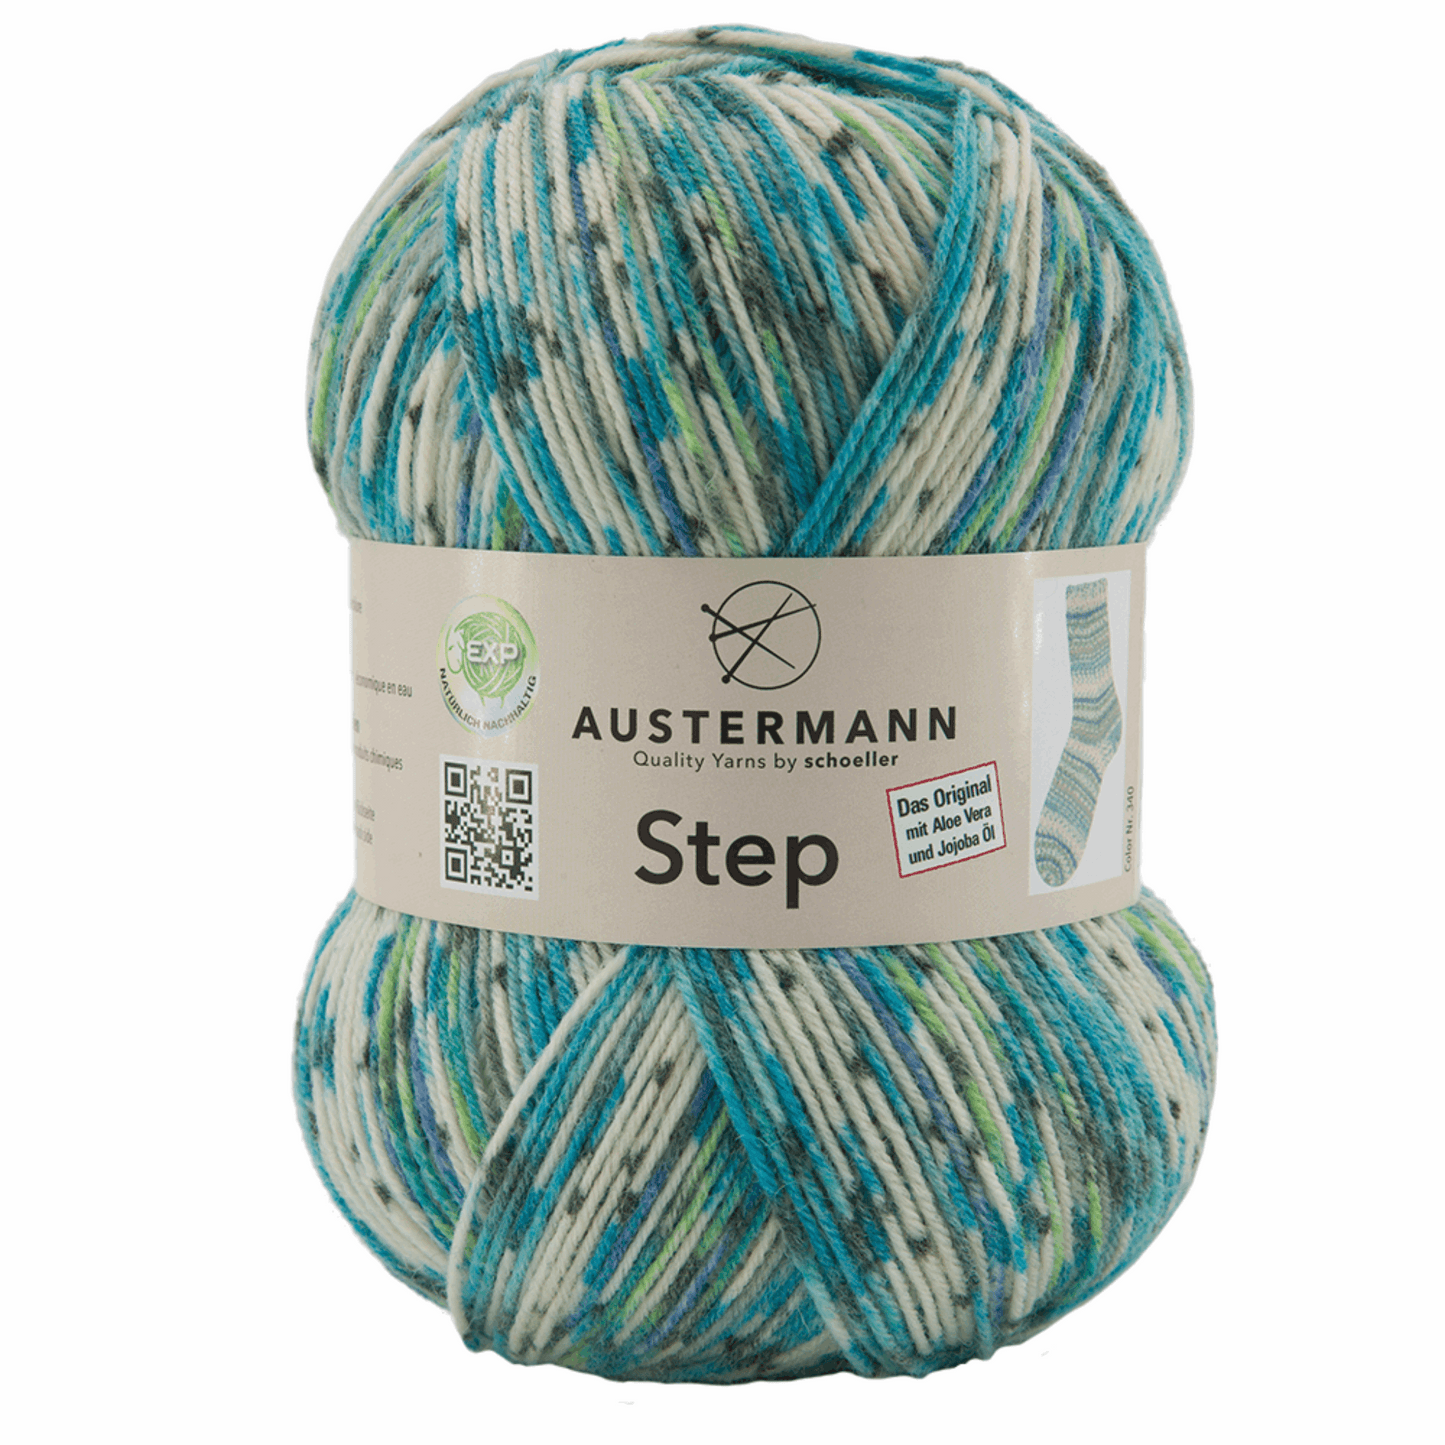 Austermann Step 4F Color 100g, 97689, Farbe trondheim 340